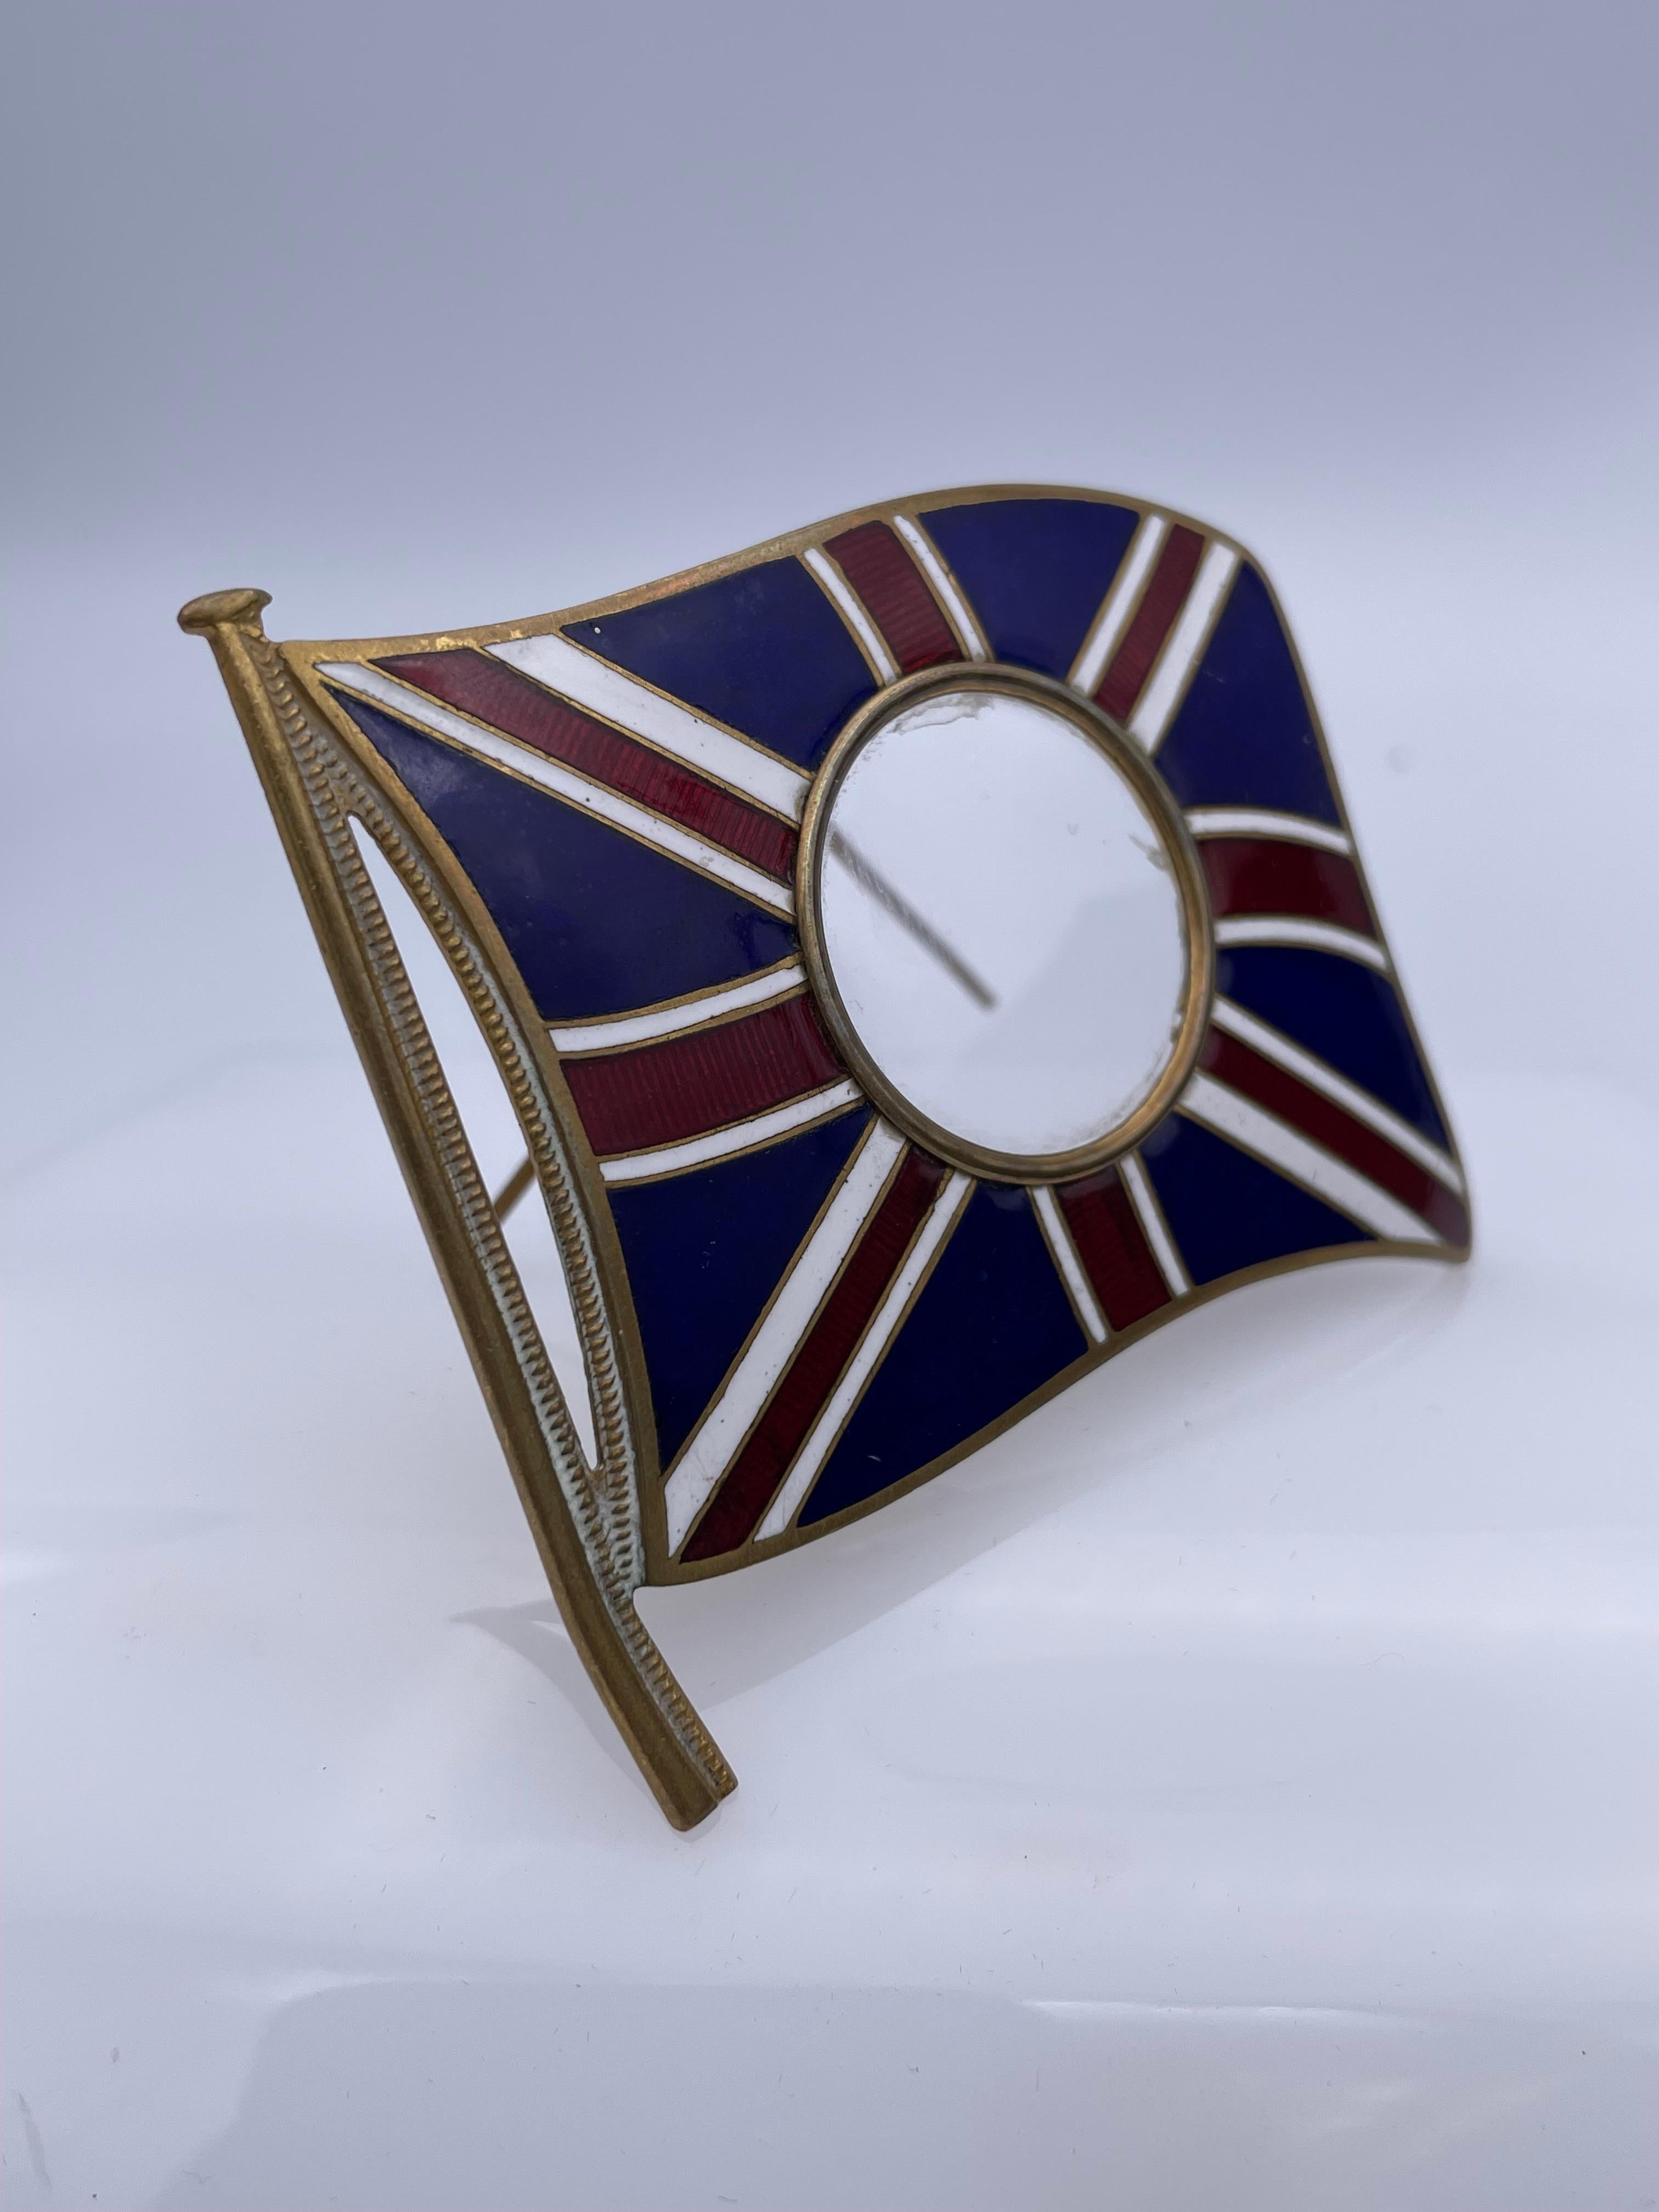 Ein sehr charmanter Bilderrahmen: eine figurale Darstellung des britischen Union Jack, mit einer Öffnung für ein Foto in der Mitte. Leuchtend kobaltblau, rot und weiß emailliert. Eine sehr anmutige Konfiguration. 2 3/4